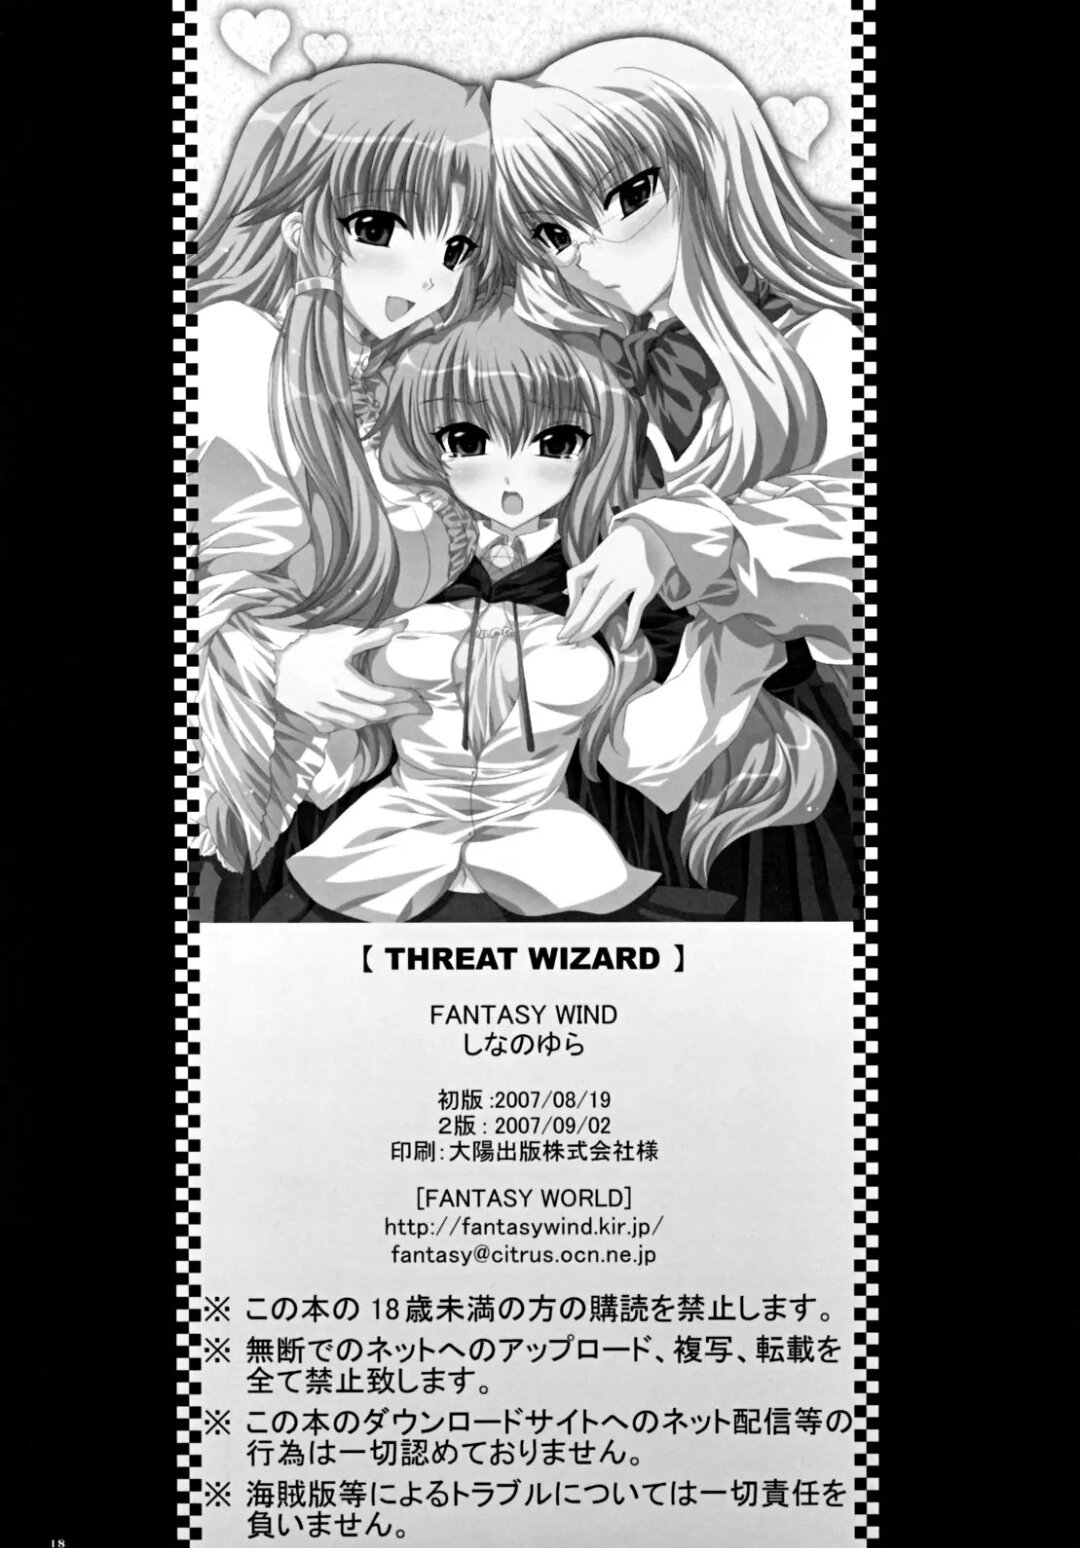 Zero no Tsukaima - THREAT WIZARD - 15